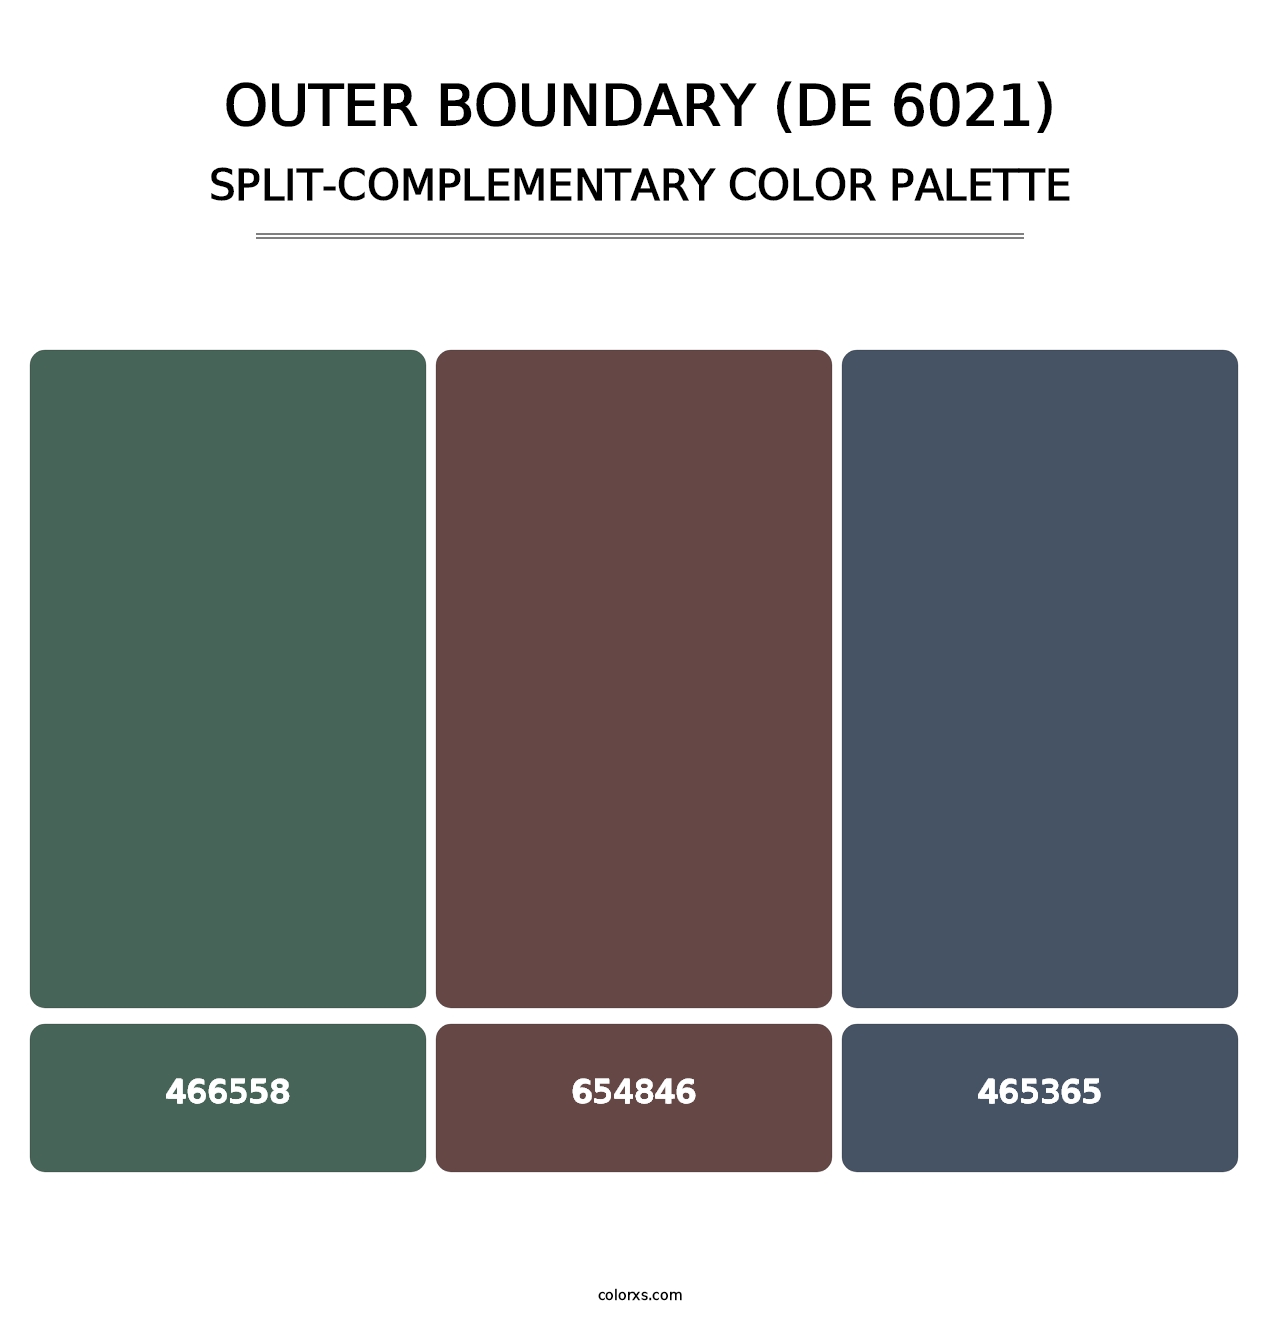 Outer Boundary (DE 6021) - Split-Complementary Color Palette